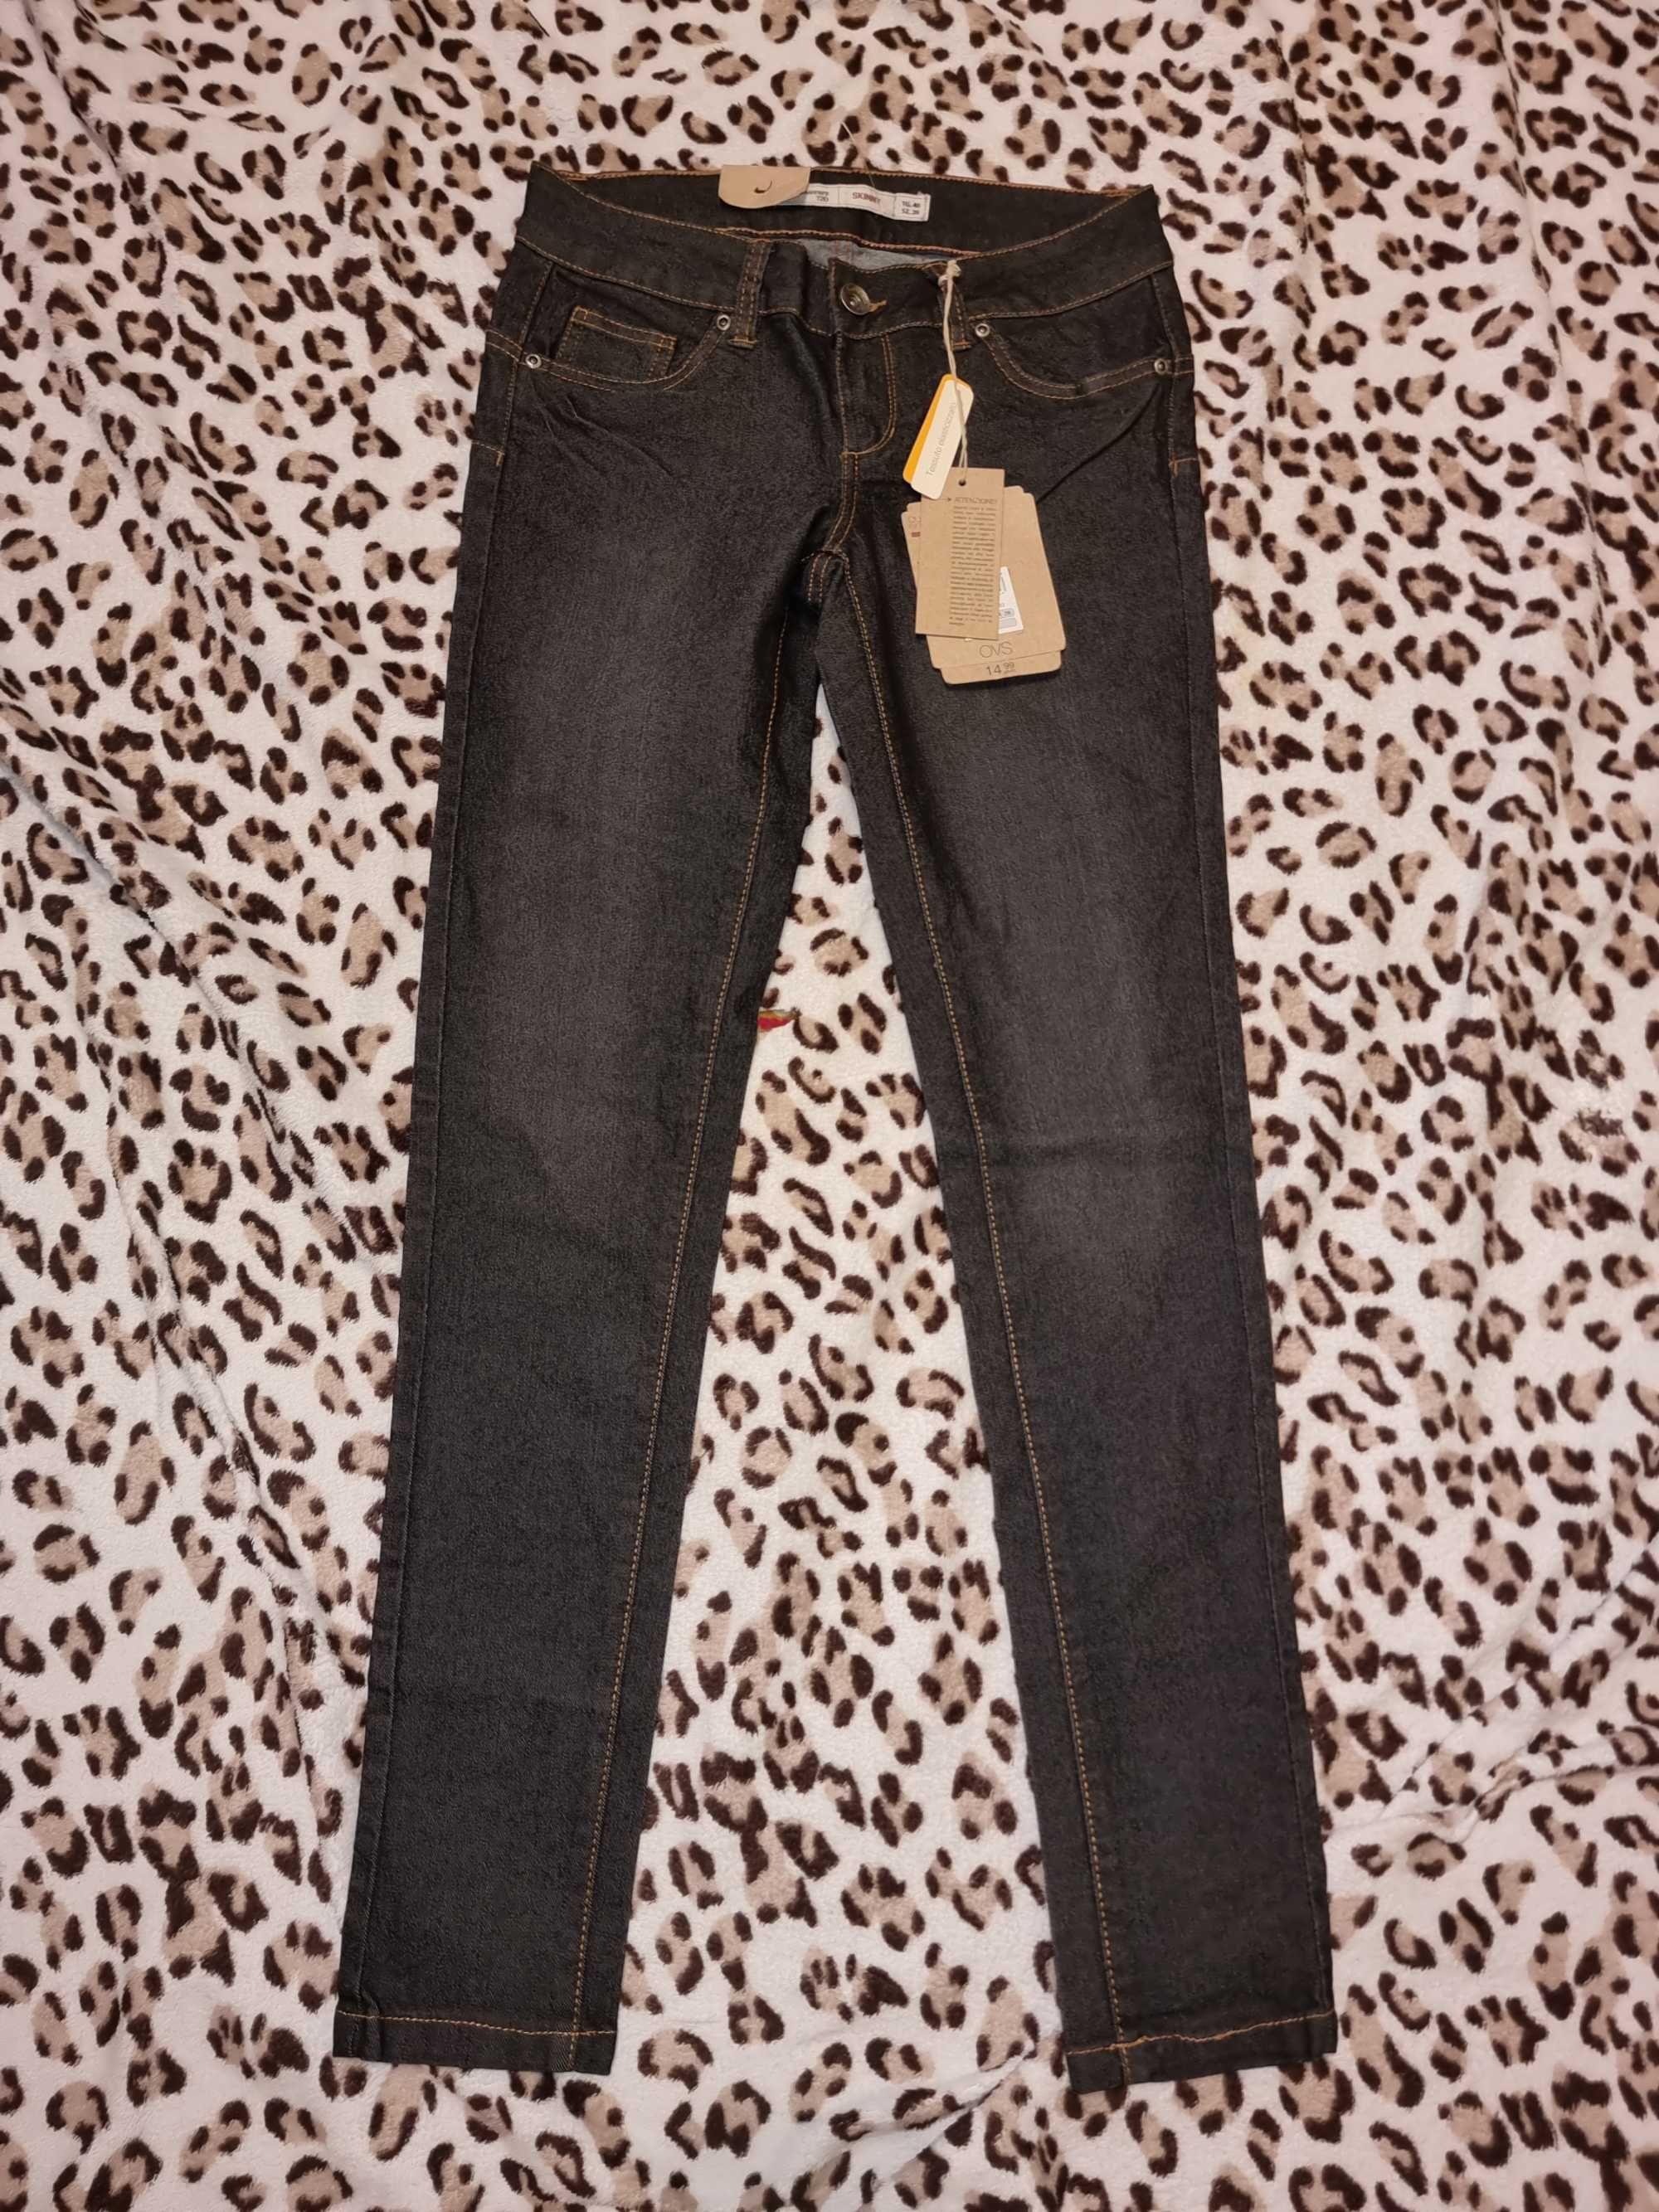 Spodnie dżinsy jeans jeansowe jeanswear nowe z metką 40 26 m l